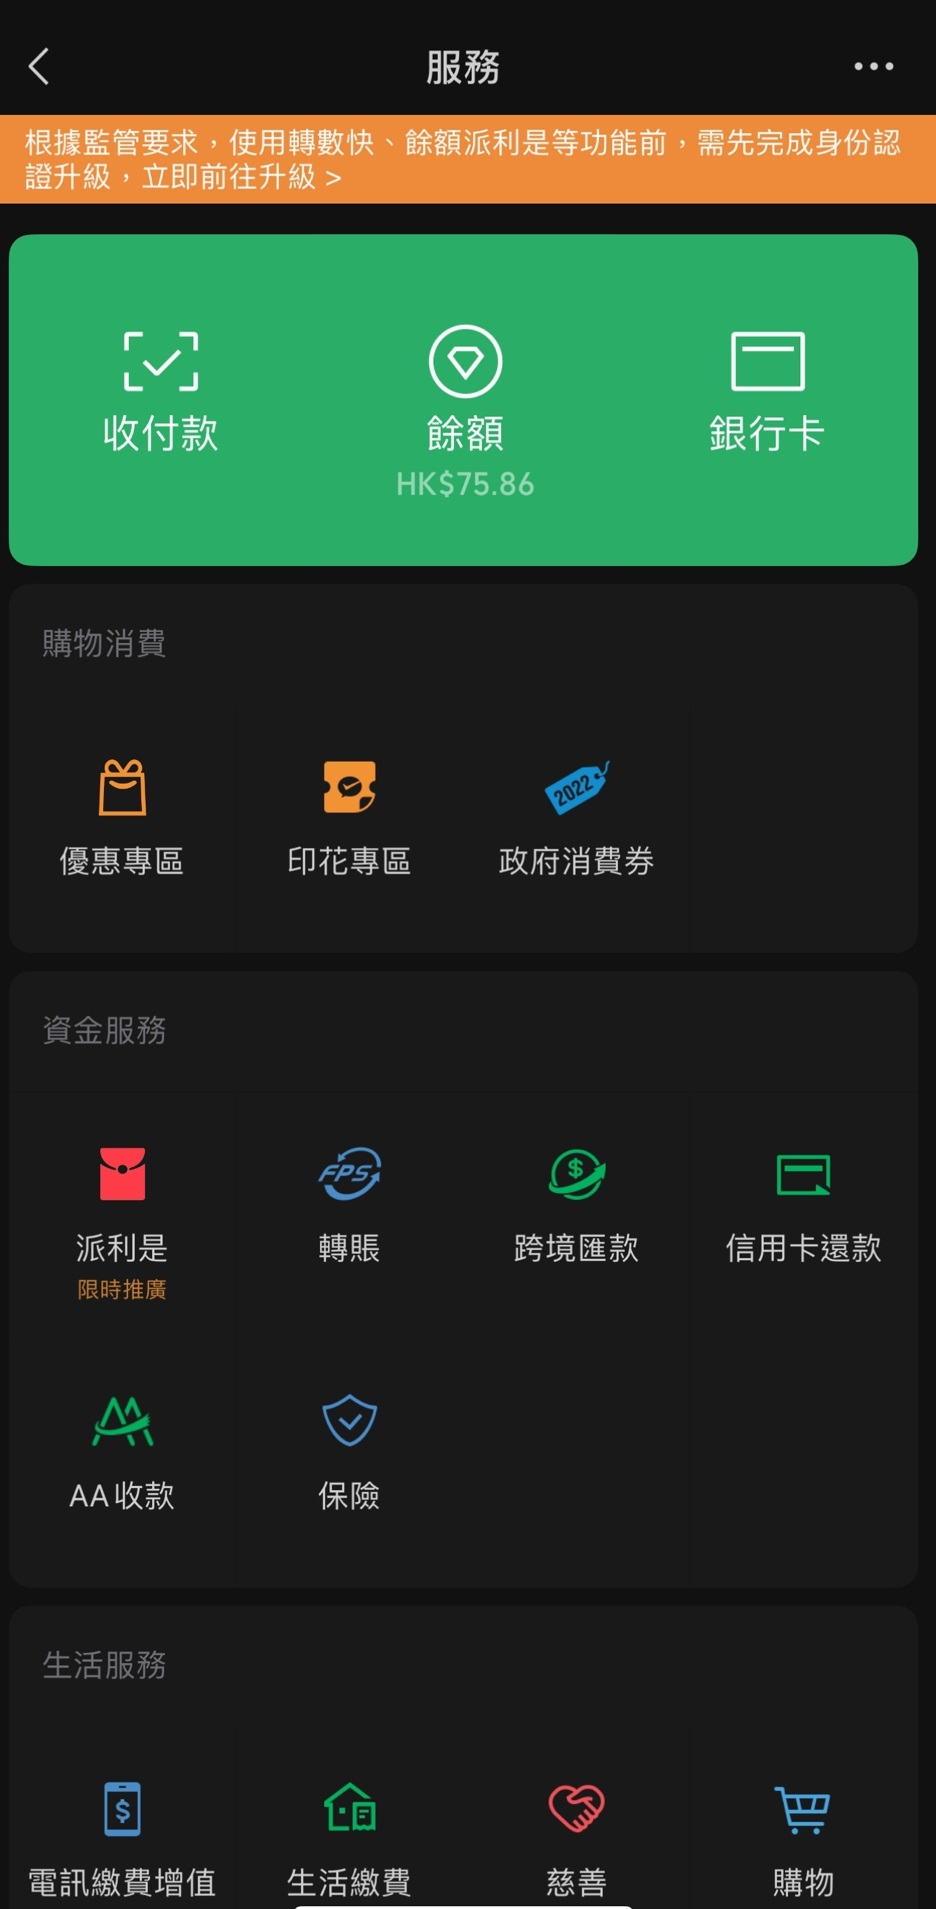 WeChat Pay HK 主頁面